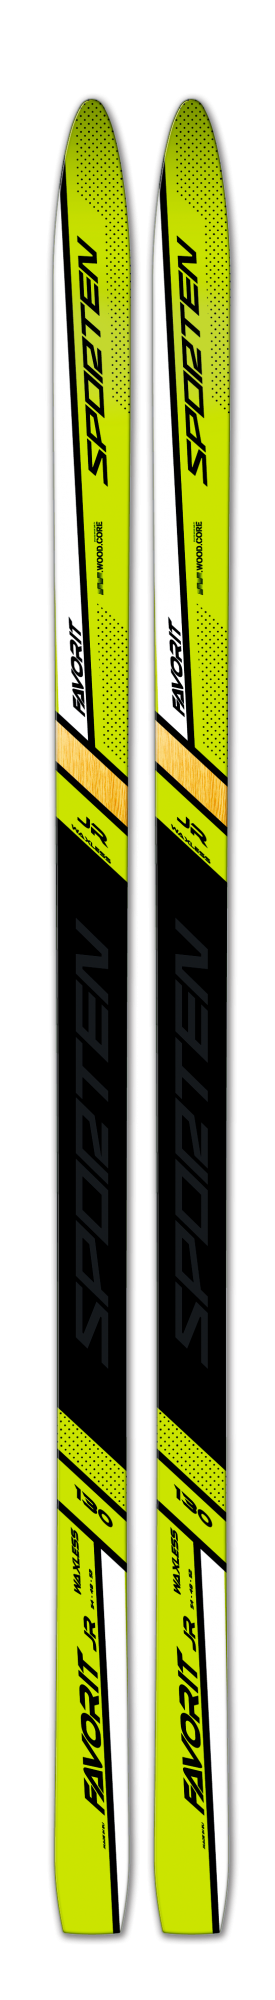 běžecké lyže Sporten Favorit JR Mg 20/21